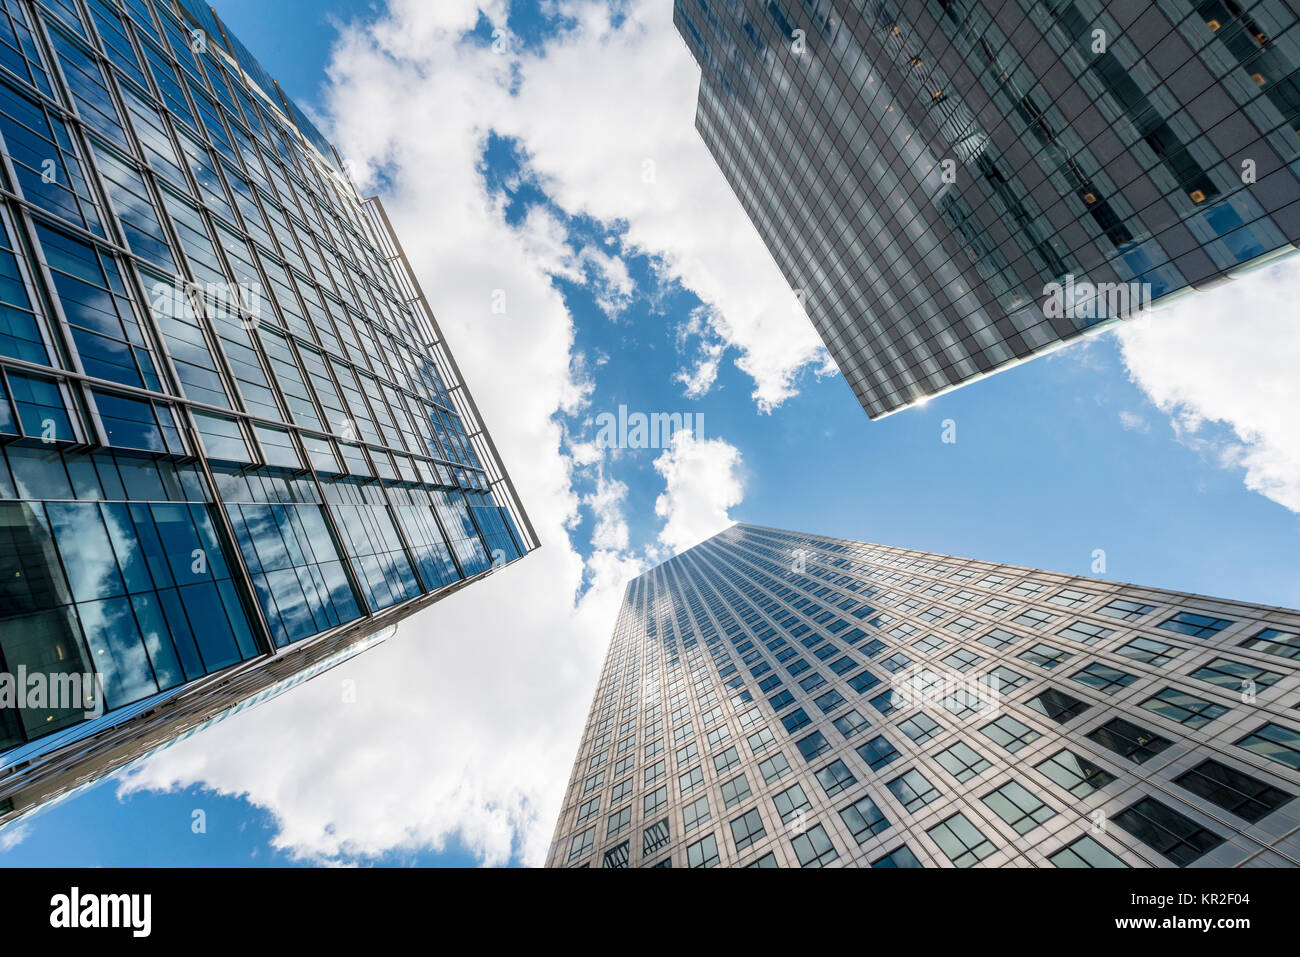 Hochhäuser mit Glasfassaden Turm in den Himmel, moderne Architektur, ein Canada Square, Canary Wharf, London, England Stockfoto